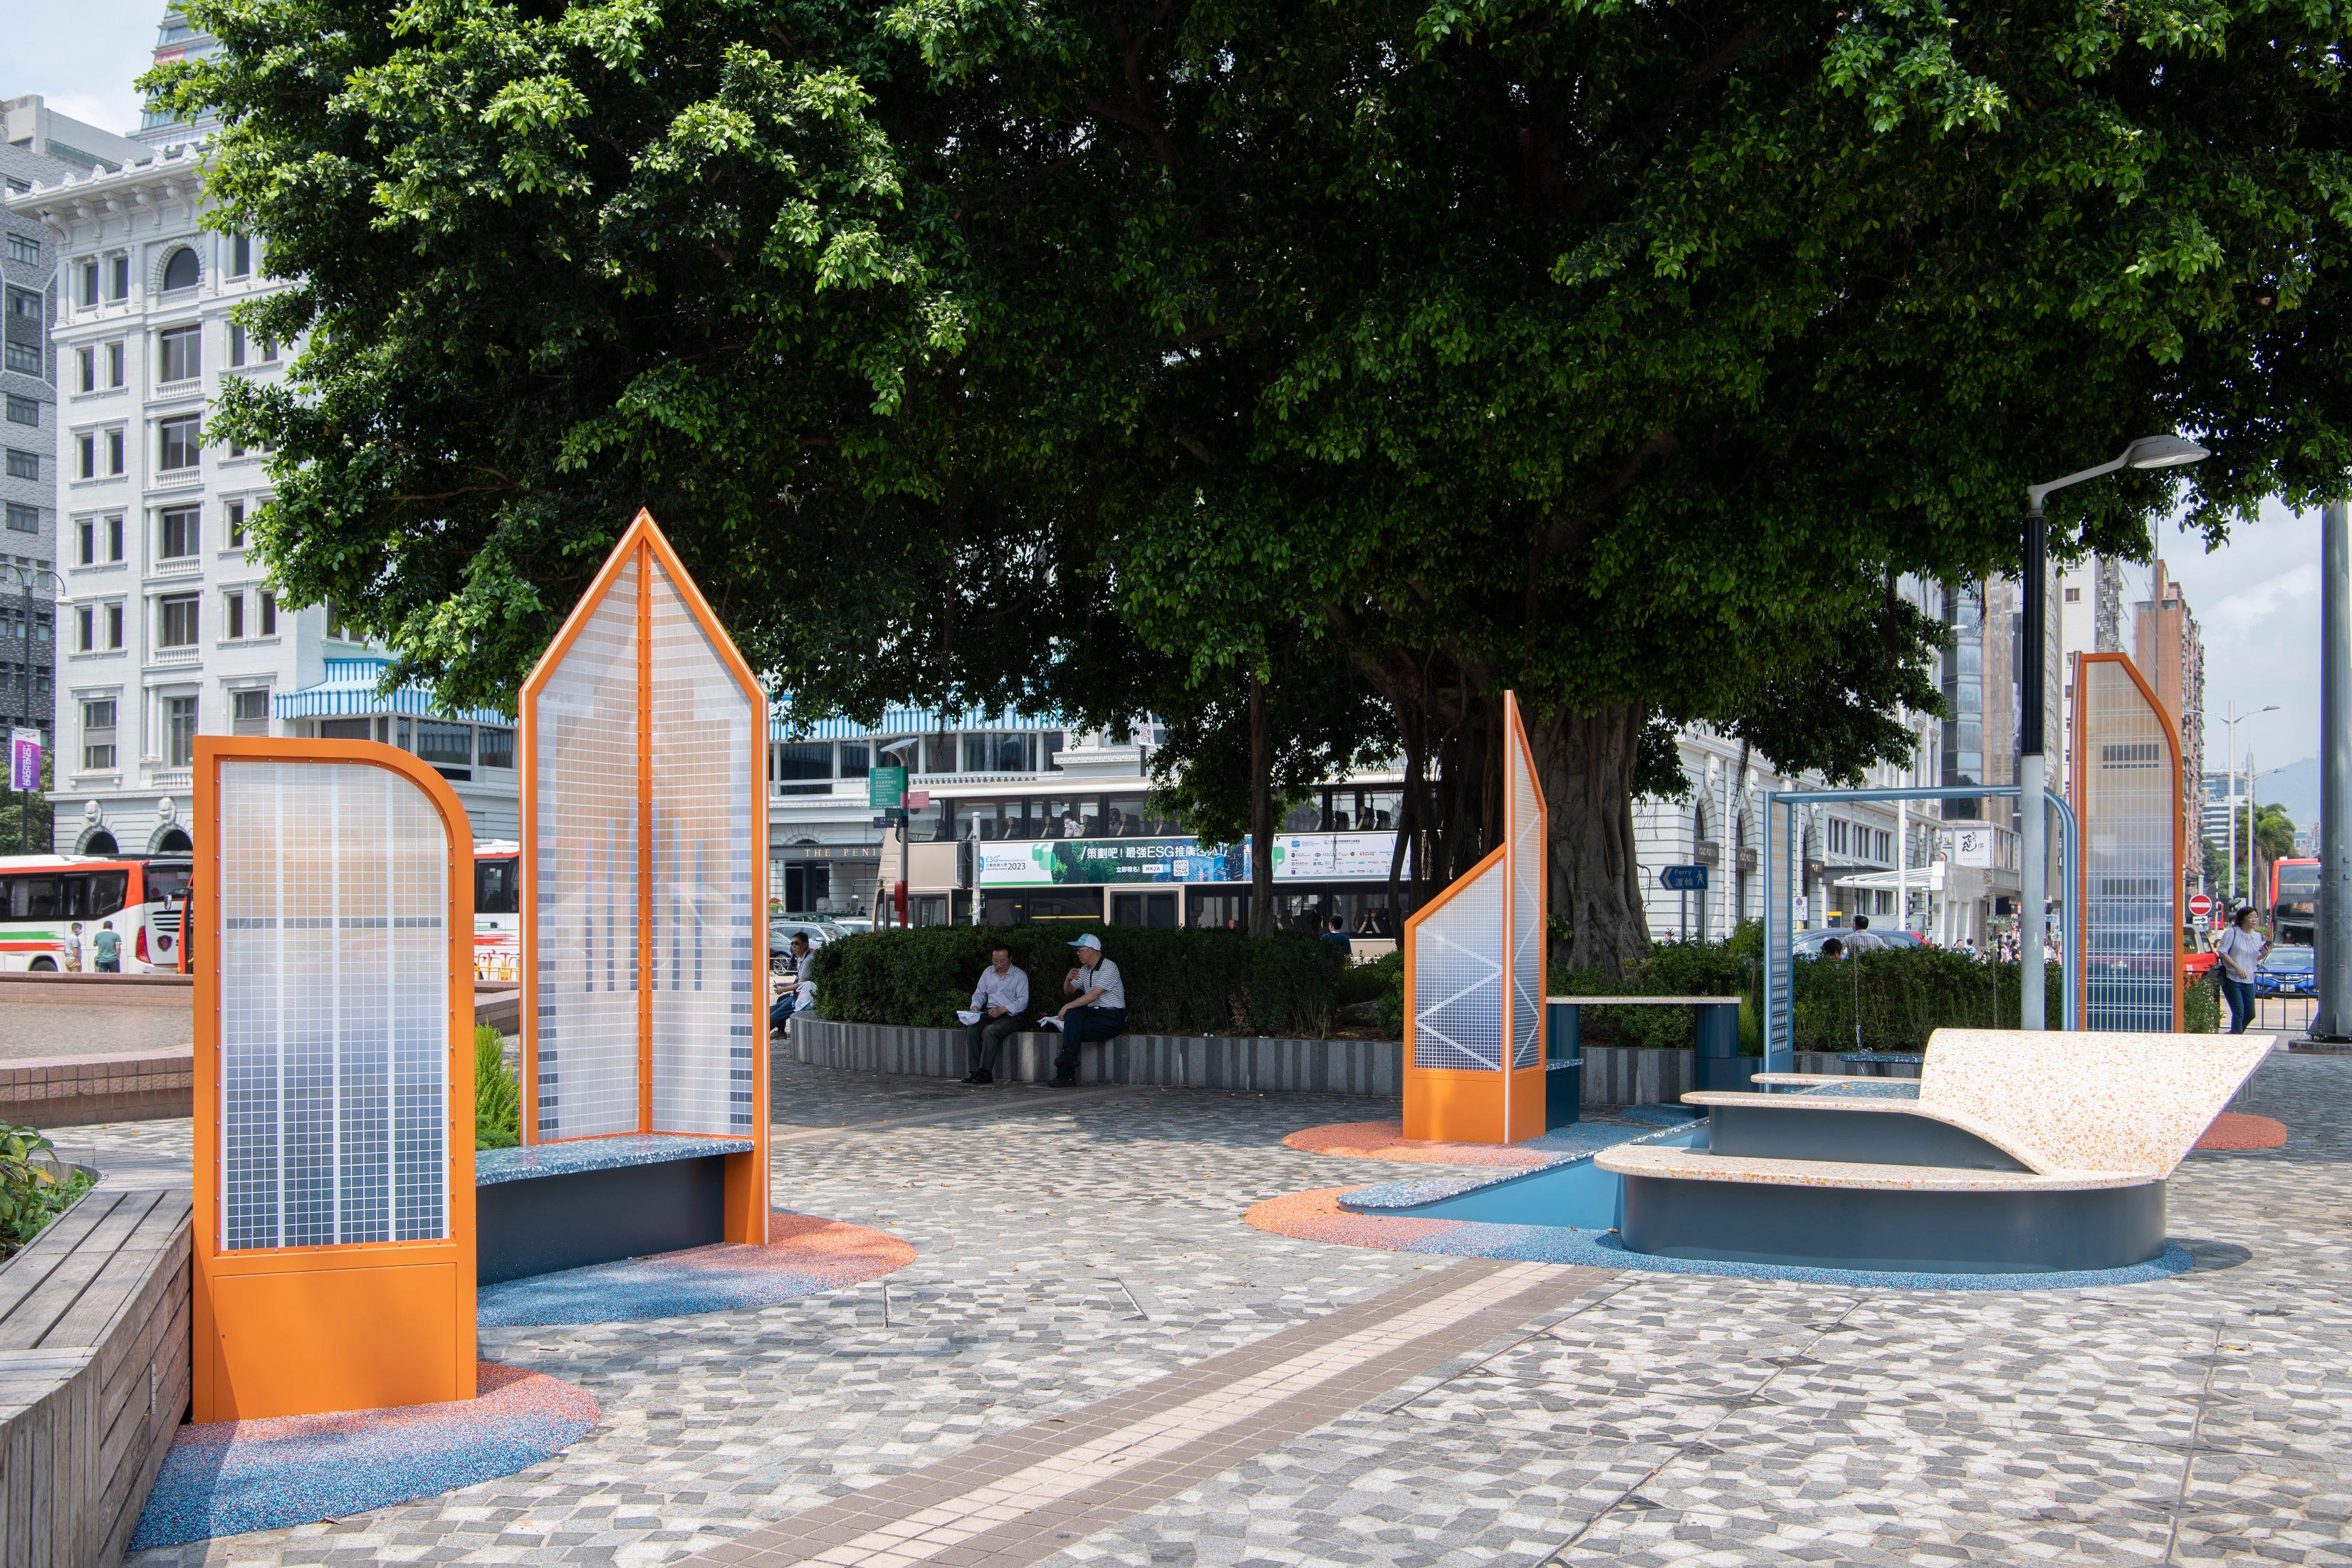 香港藝術館最新展覽「游•遊」，邀請兩位香港藝術家分別創作兩組大型戶外裝置作品，於藝術館前方的藝術廣場展出，讓公眾重新想像毗鄰的海港。藝術家兼建築師蔡偉權將維港兩岸的地標建築縮小成《人遊於港》作品，將藝術廣場變為可供遊人休憩耍樂的公共空間。